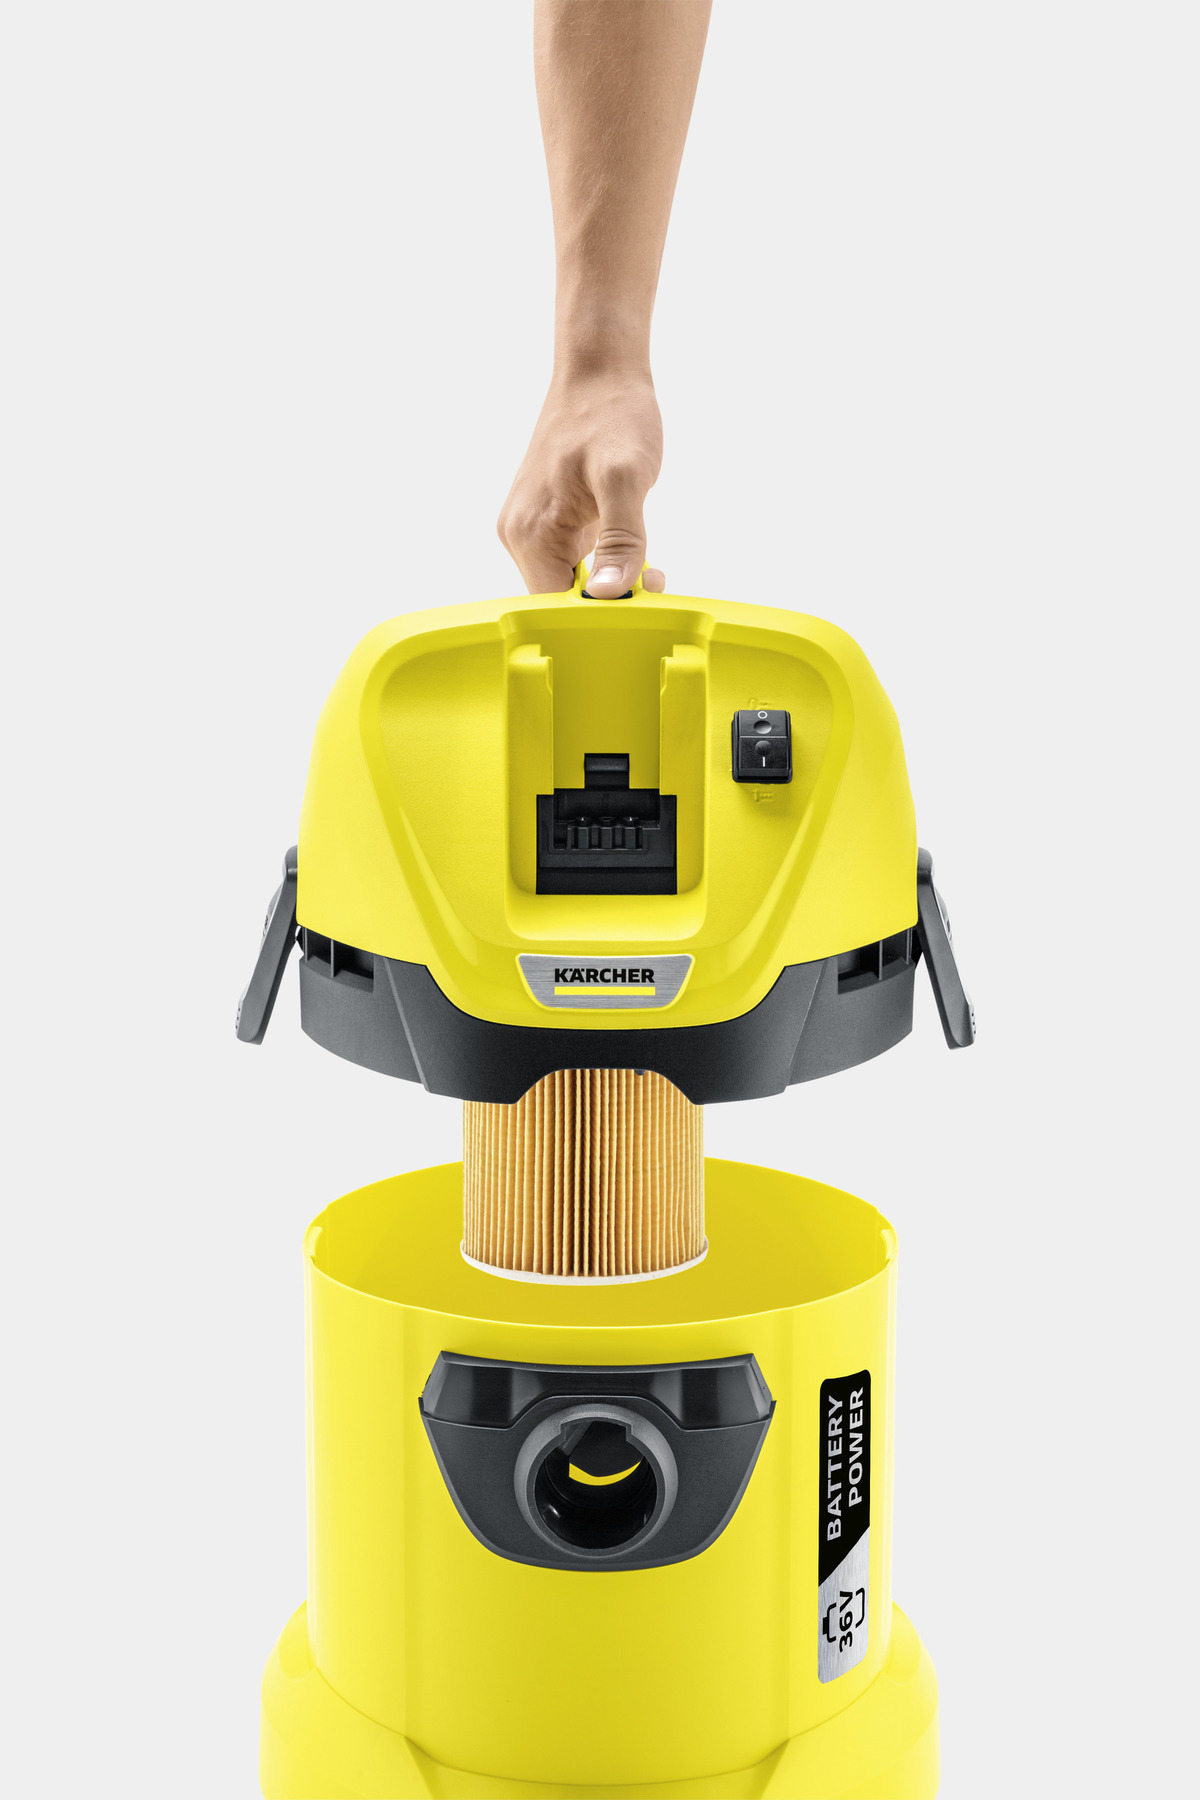  Kärcher WD 3 - Aspiradora multiusos para tienda en seco y  húmedo, 4.5 galones, con accesorios, función de soplador, diseño compacto  que ahorra espacio, 1000 W, color amarillo : Hogar y Cocina